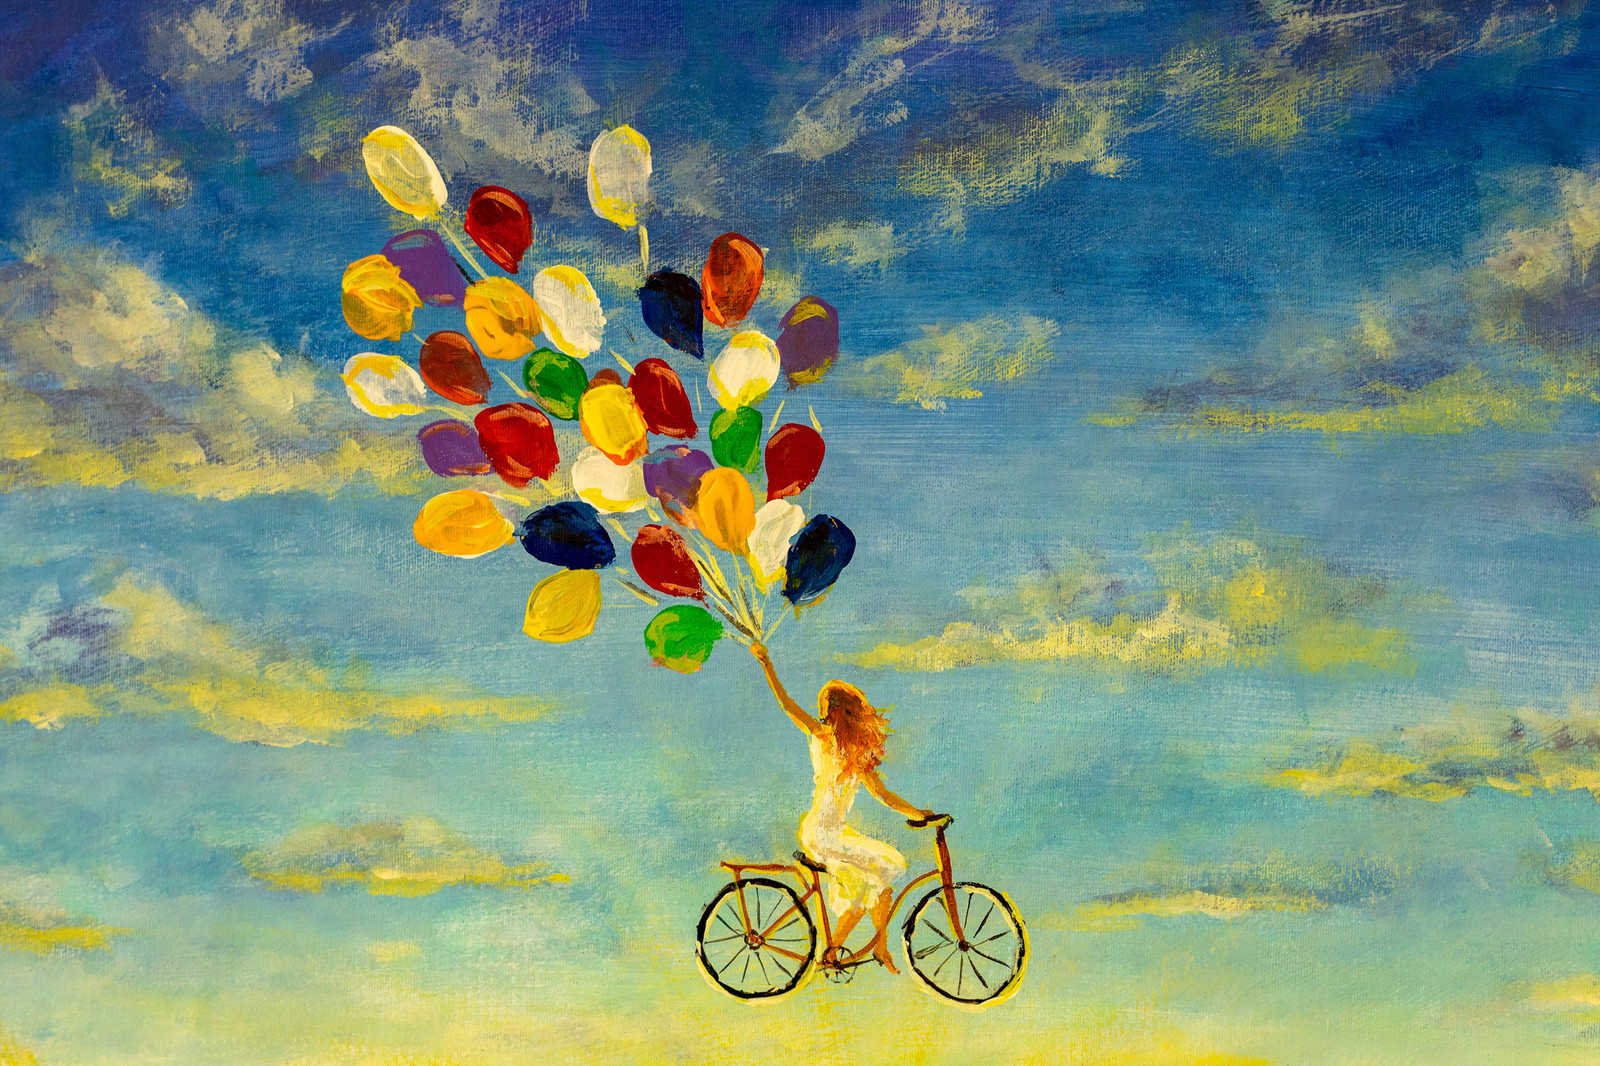             Canvas schilderij met Vrouw op fiets in de lucht - 0,90 m x 0,60 m
        